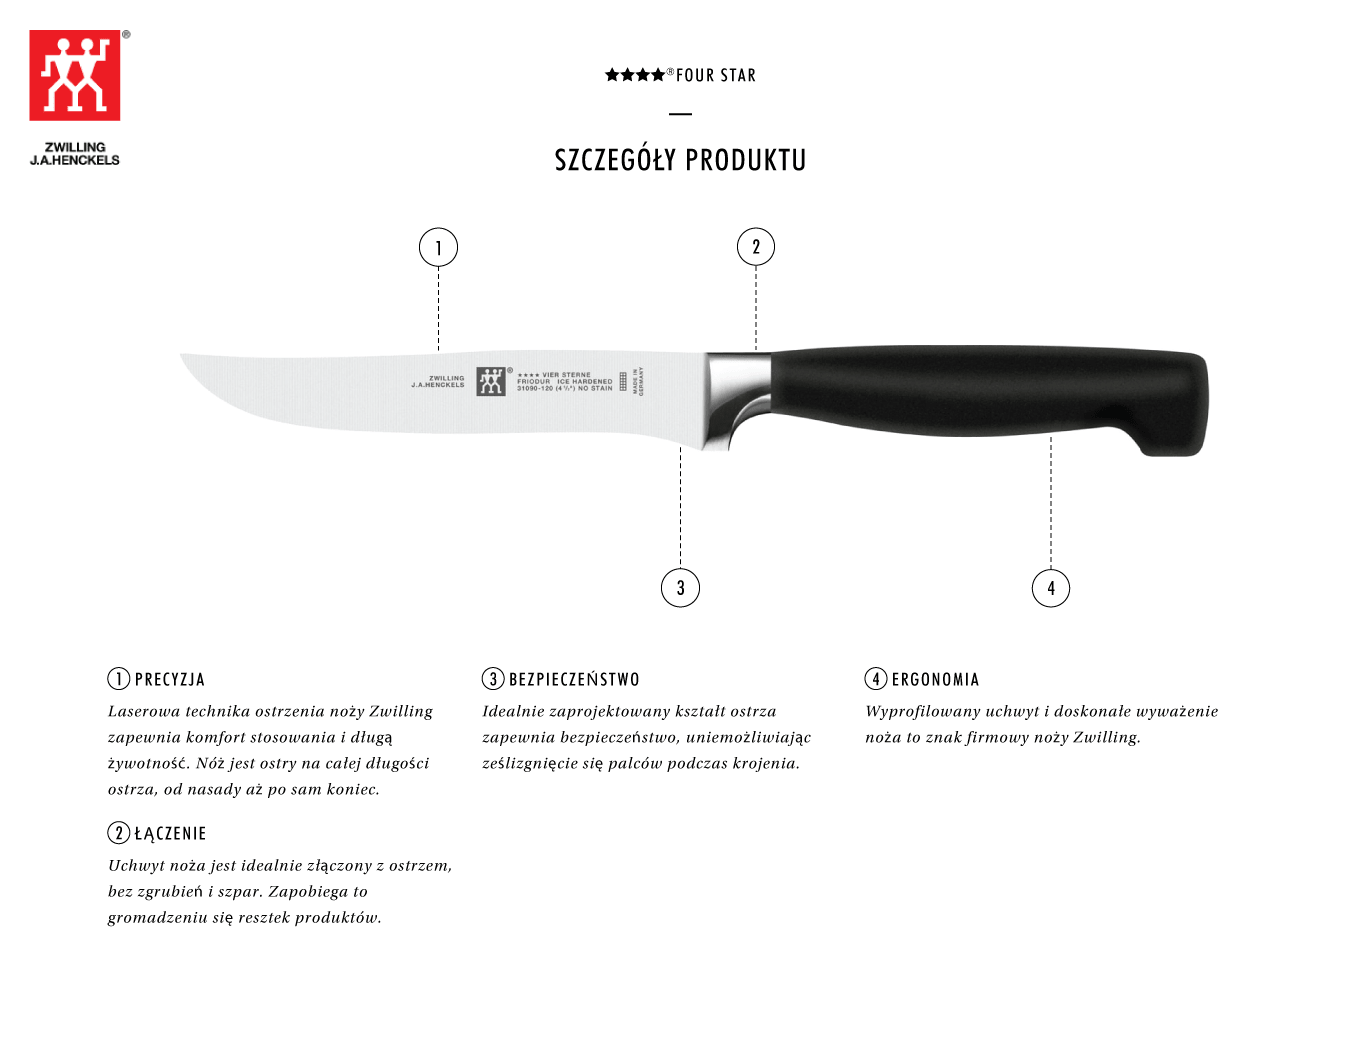 Dlaczego warto kupić nóż do steków Zwilling ★★★★ ®FOUR STAR?